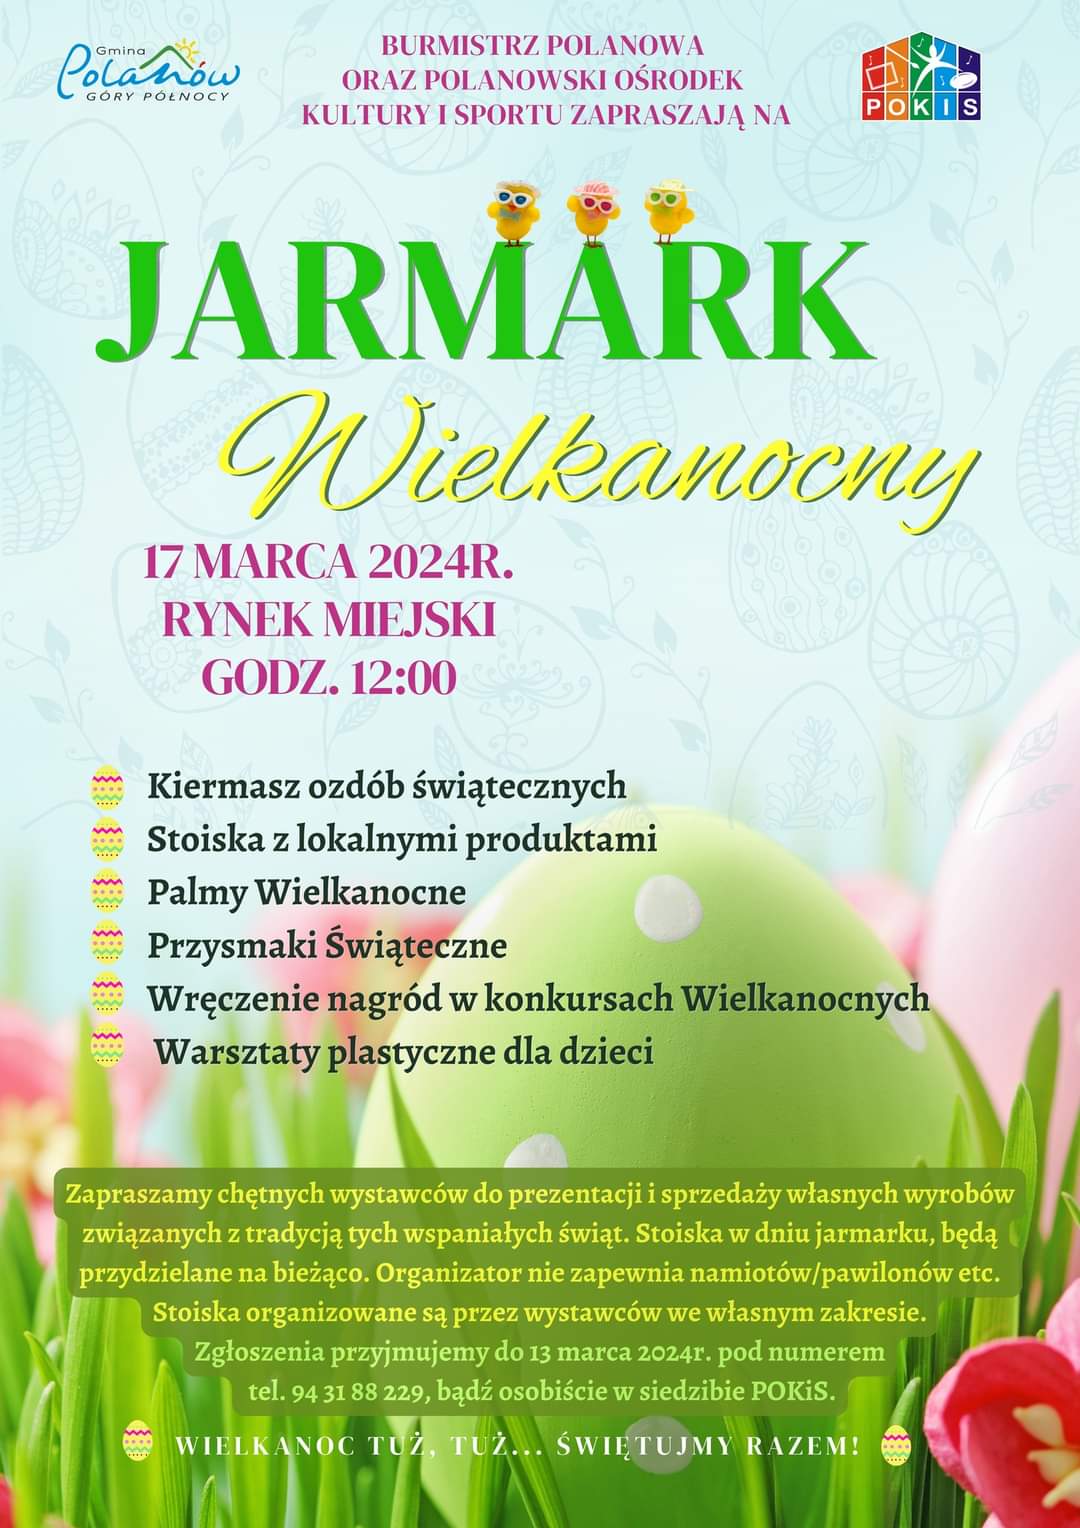 Plakat z zaproszeniem na Jarmark Wielkanocny w Polanowie 17 marca 2024